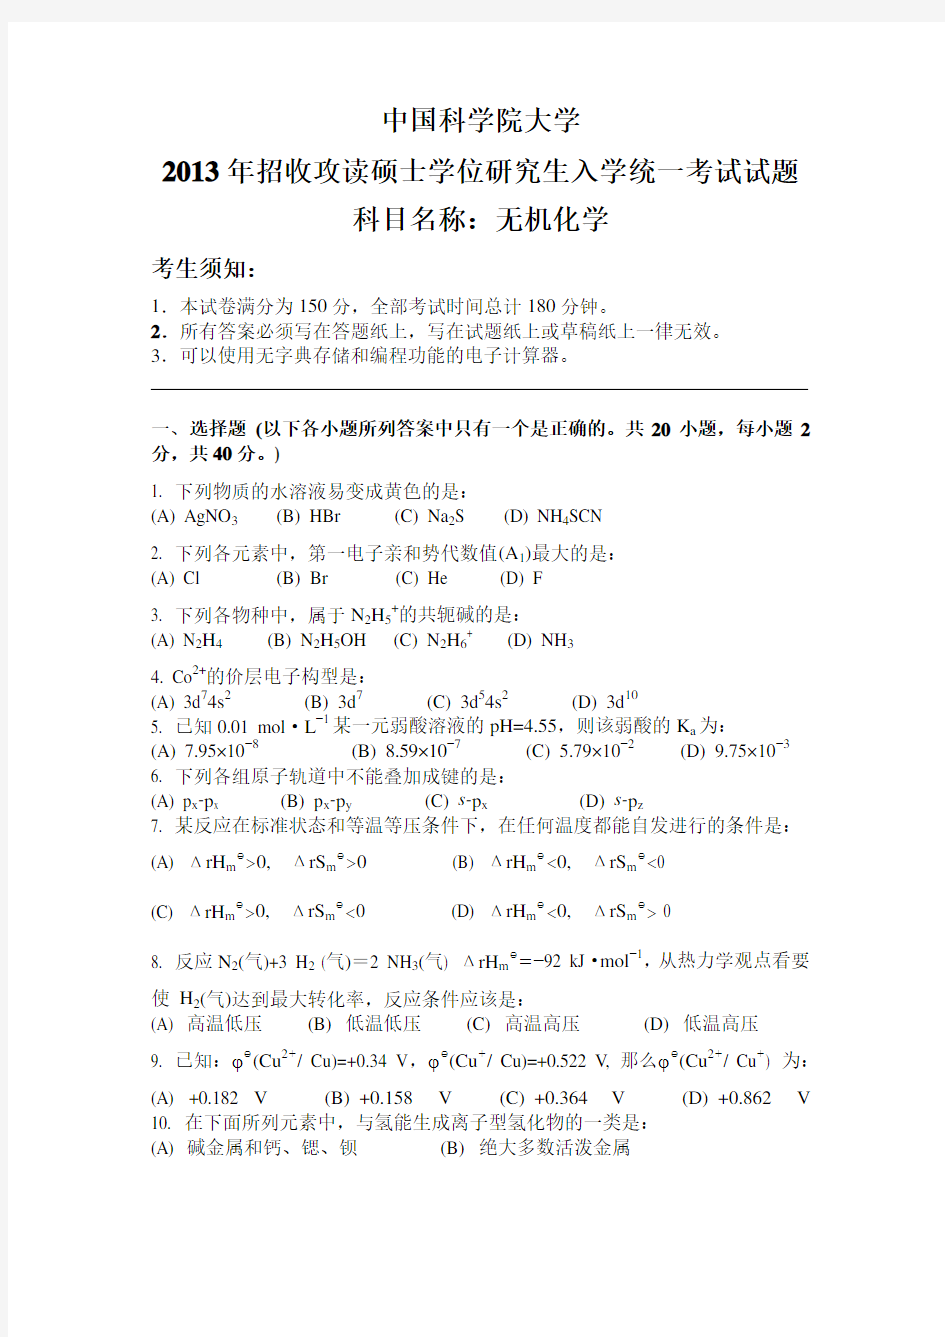 2013年中国科学院大学考研真题无机化学硕士研究生专业课考试试题